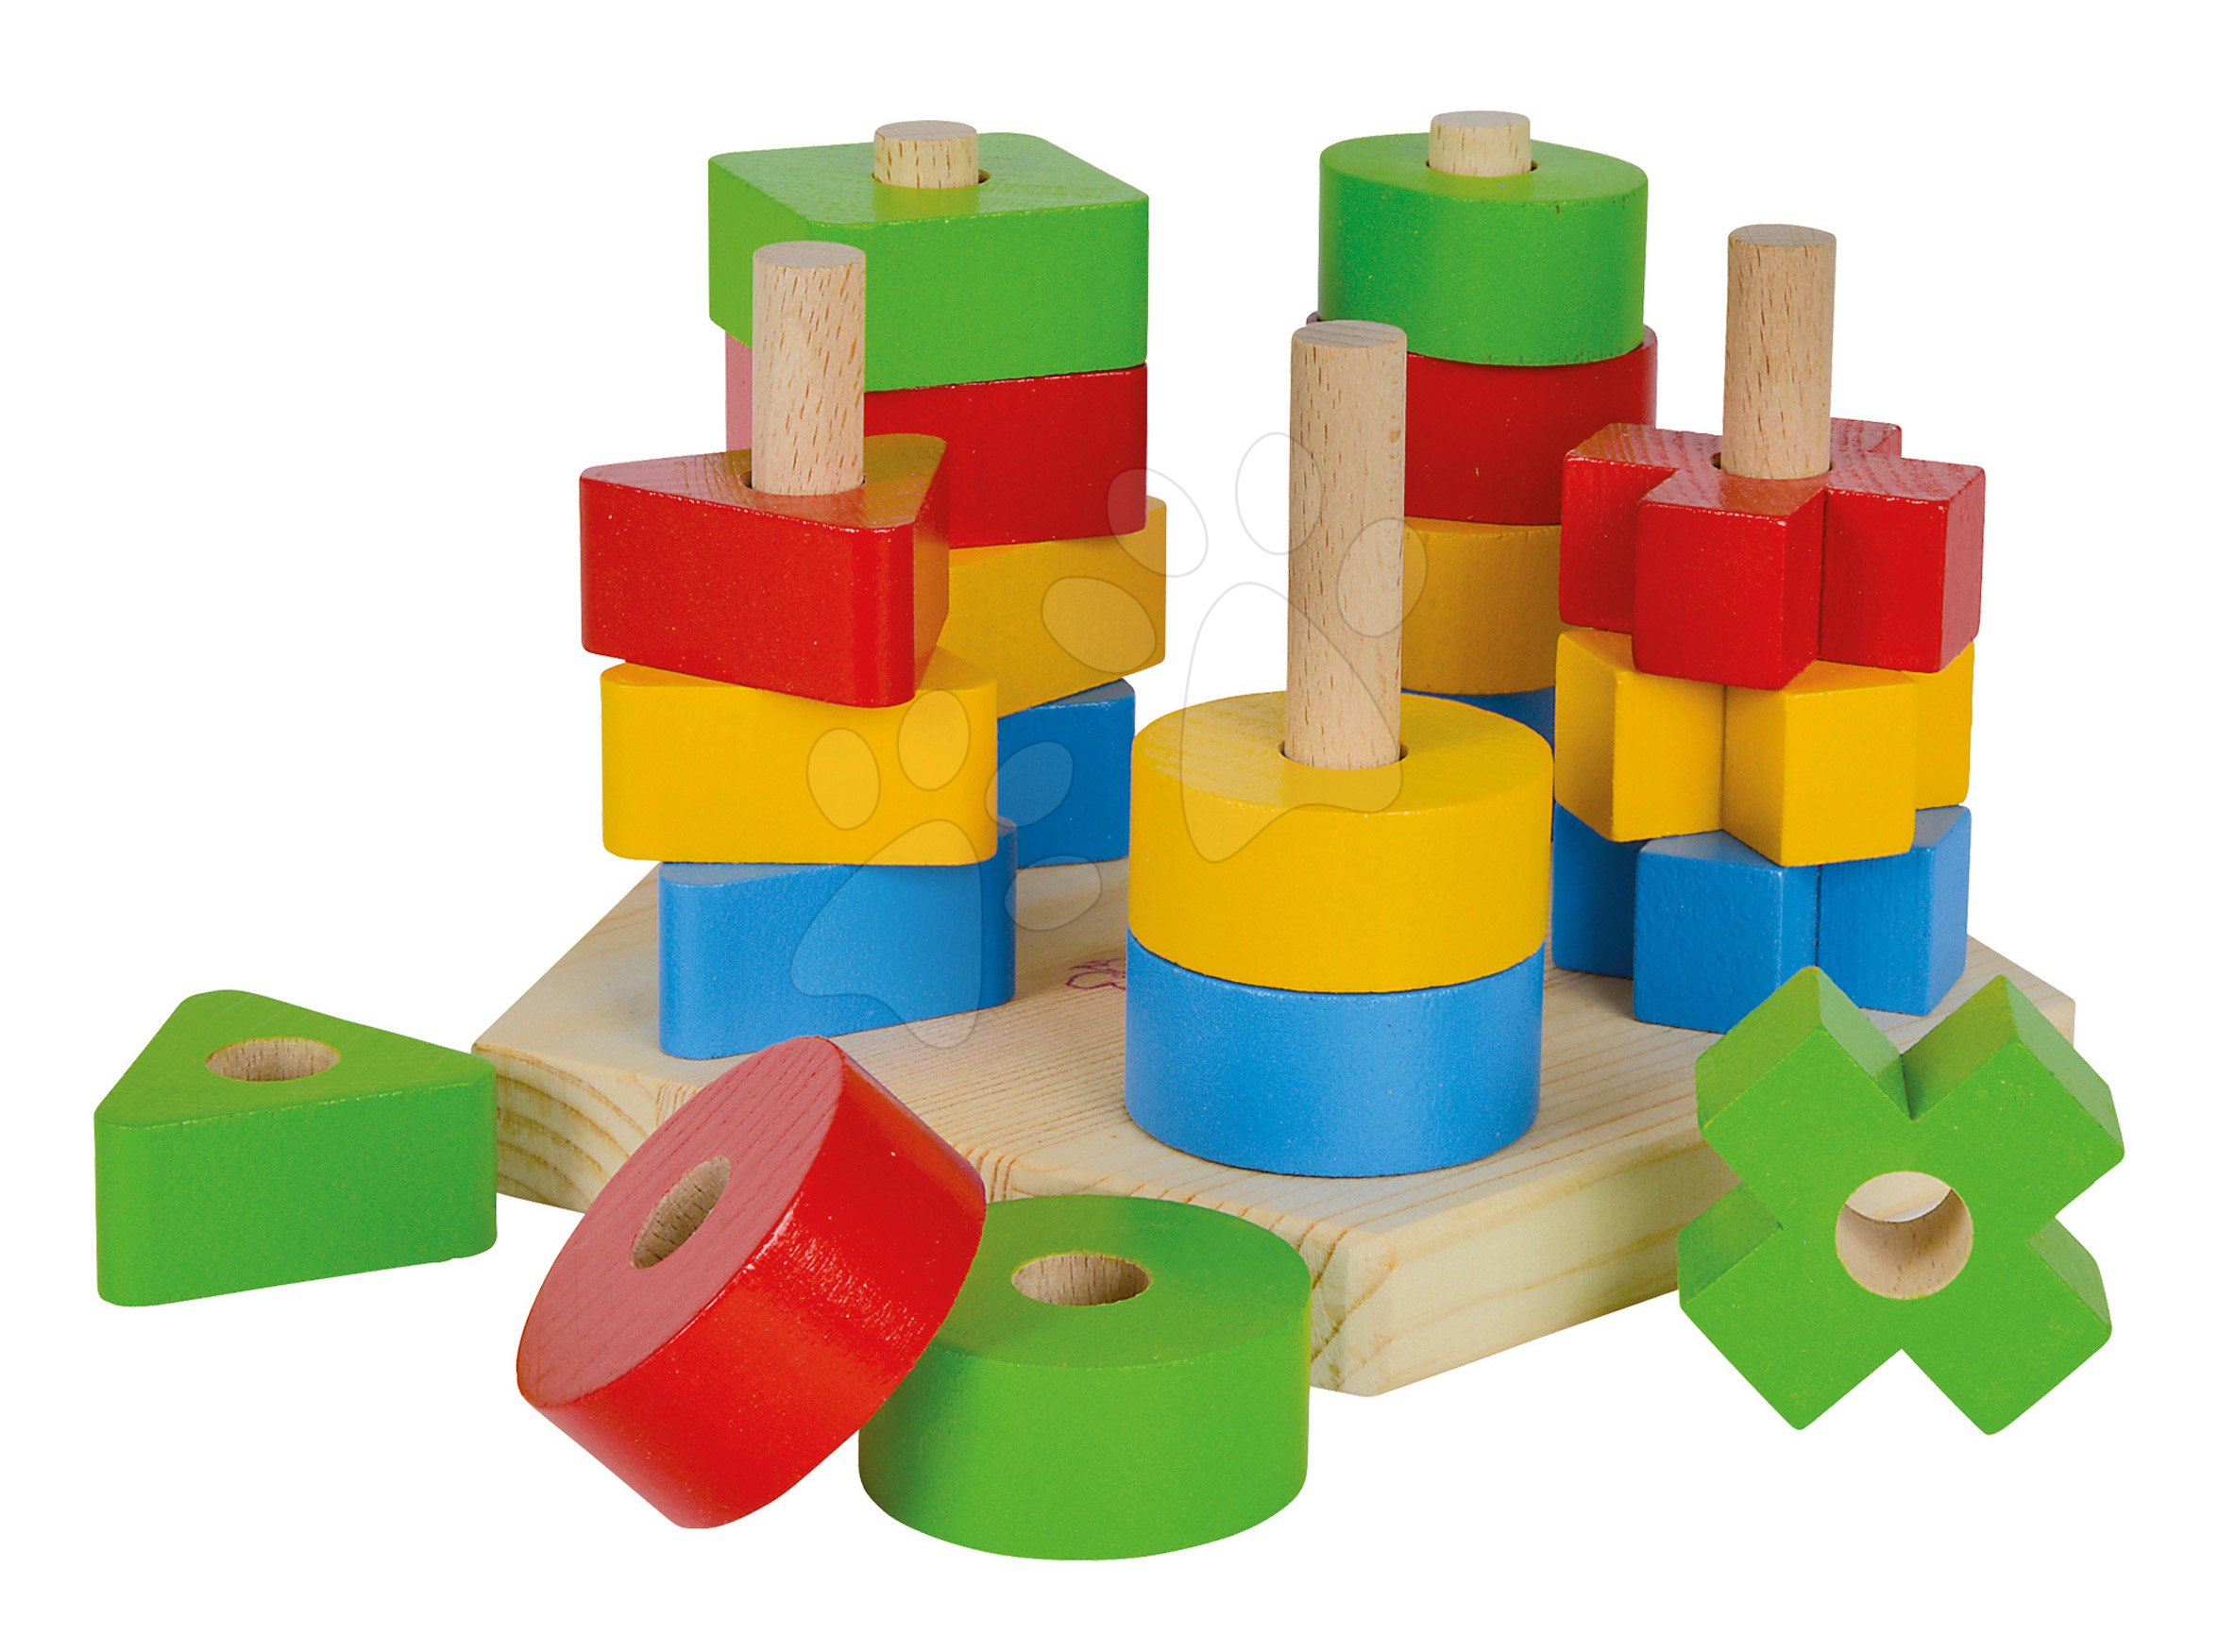 Drevená skladačka veža Stacking Toy Eichhorn s 5 rôznymi farebnými tvarmi 21 dielov od 12 mes